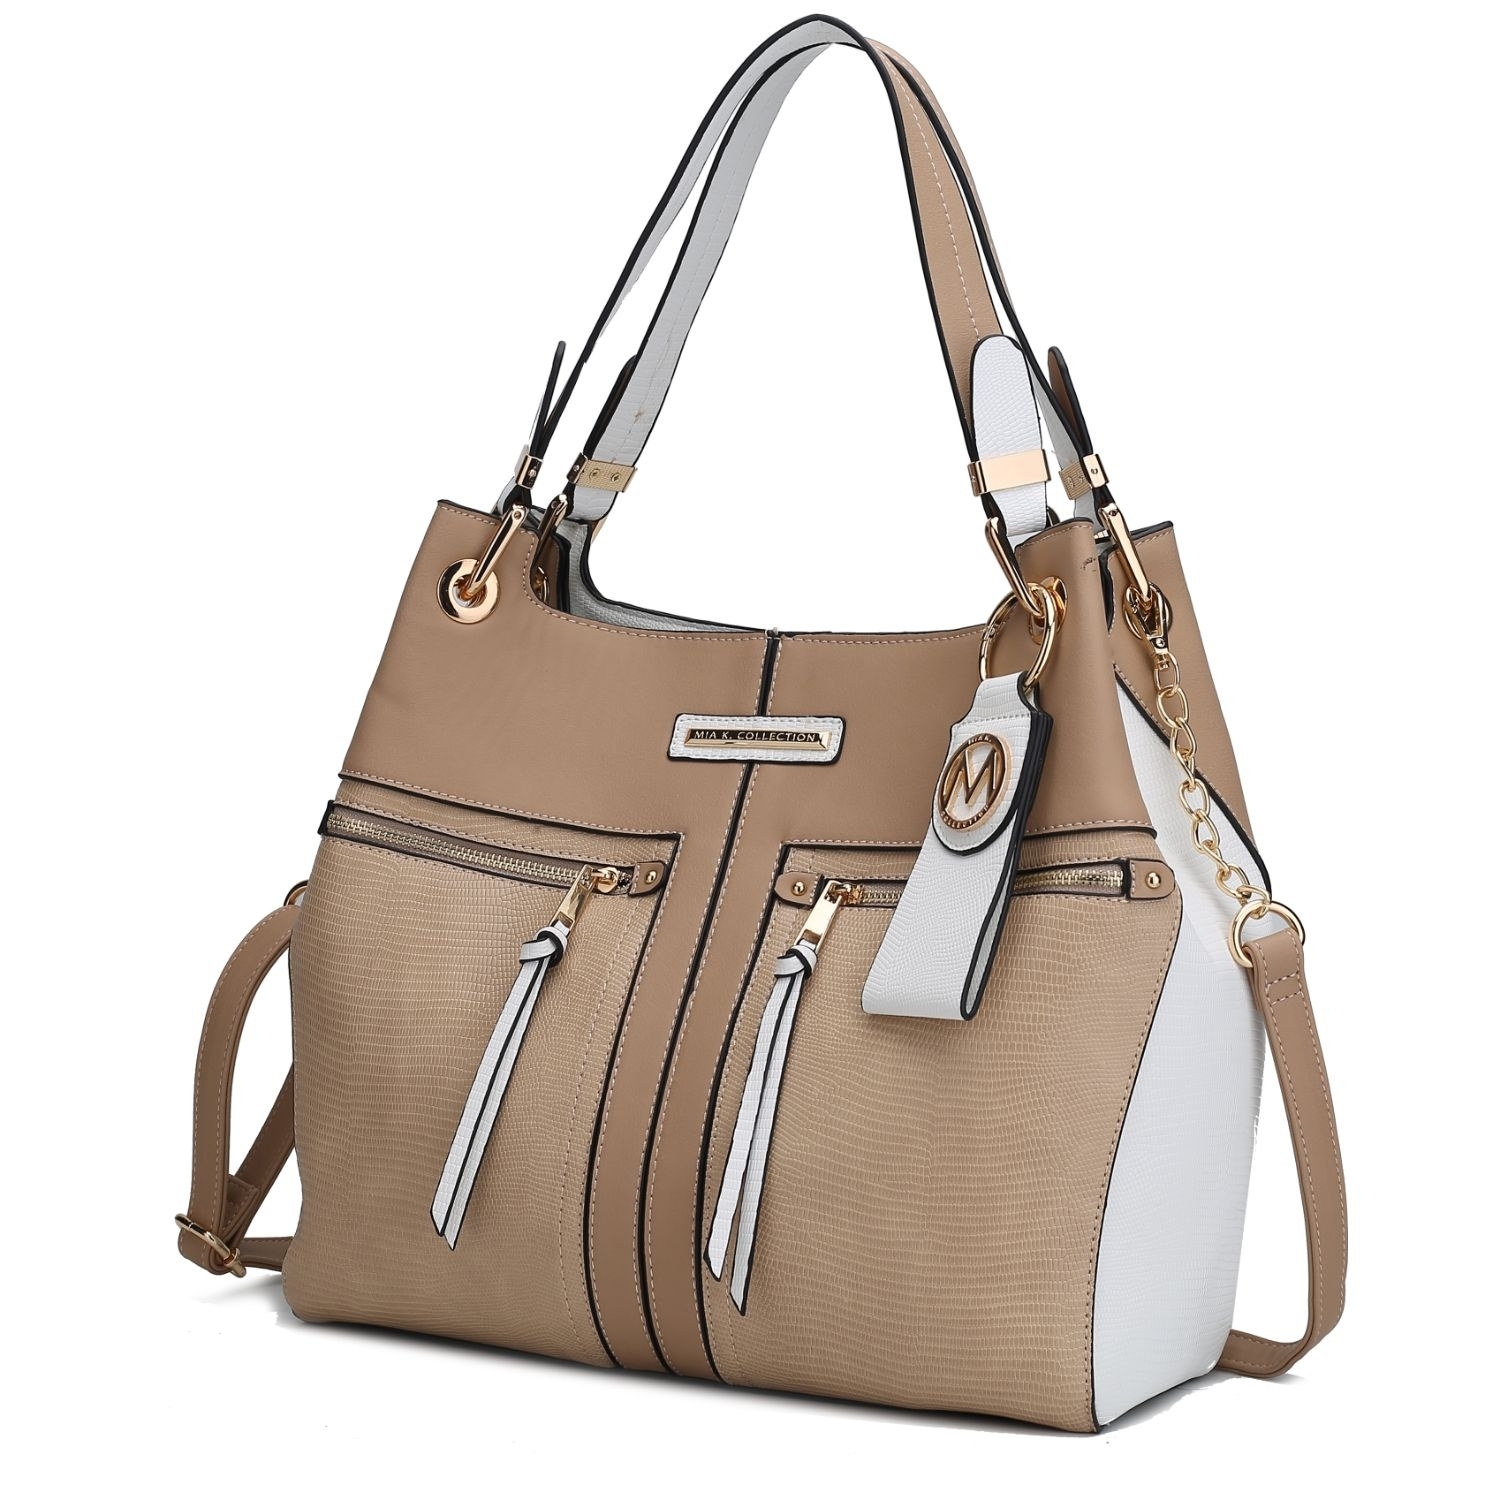 Sofia' Bag; Fall 2022 Handbag Collection